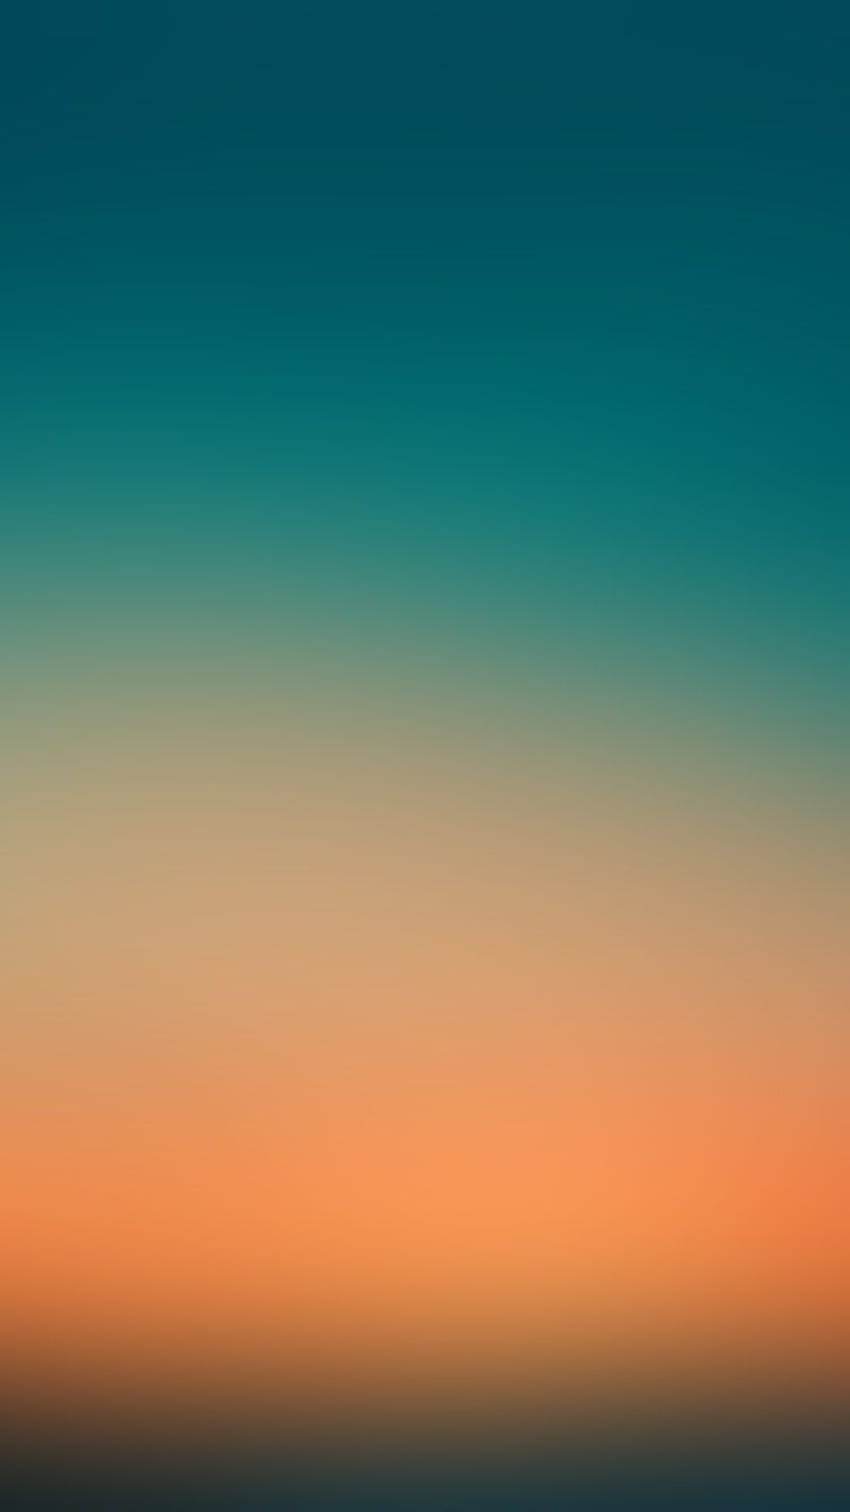 Teal dan Oranye wallpaper ponsel HD